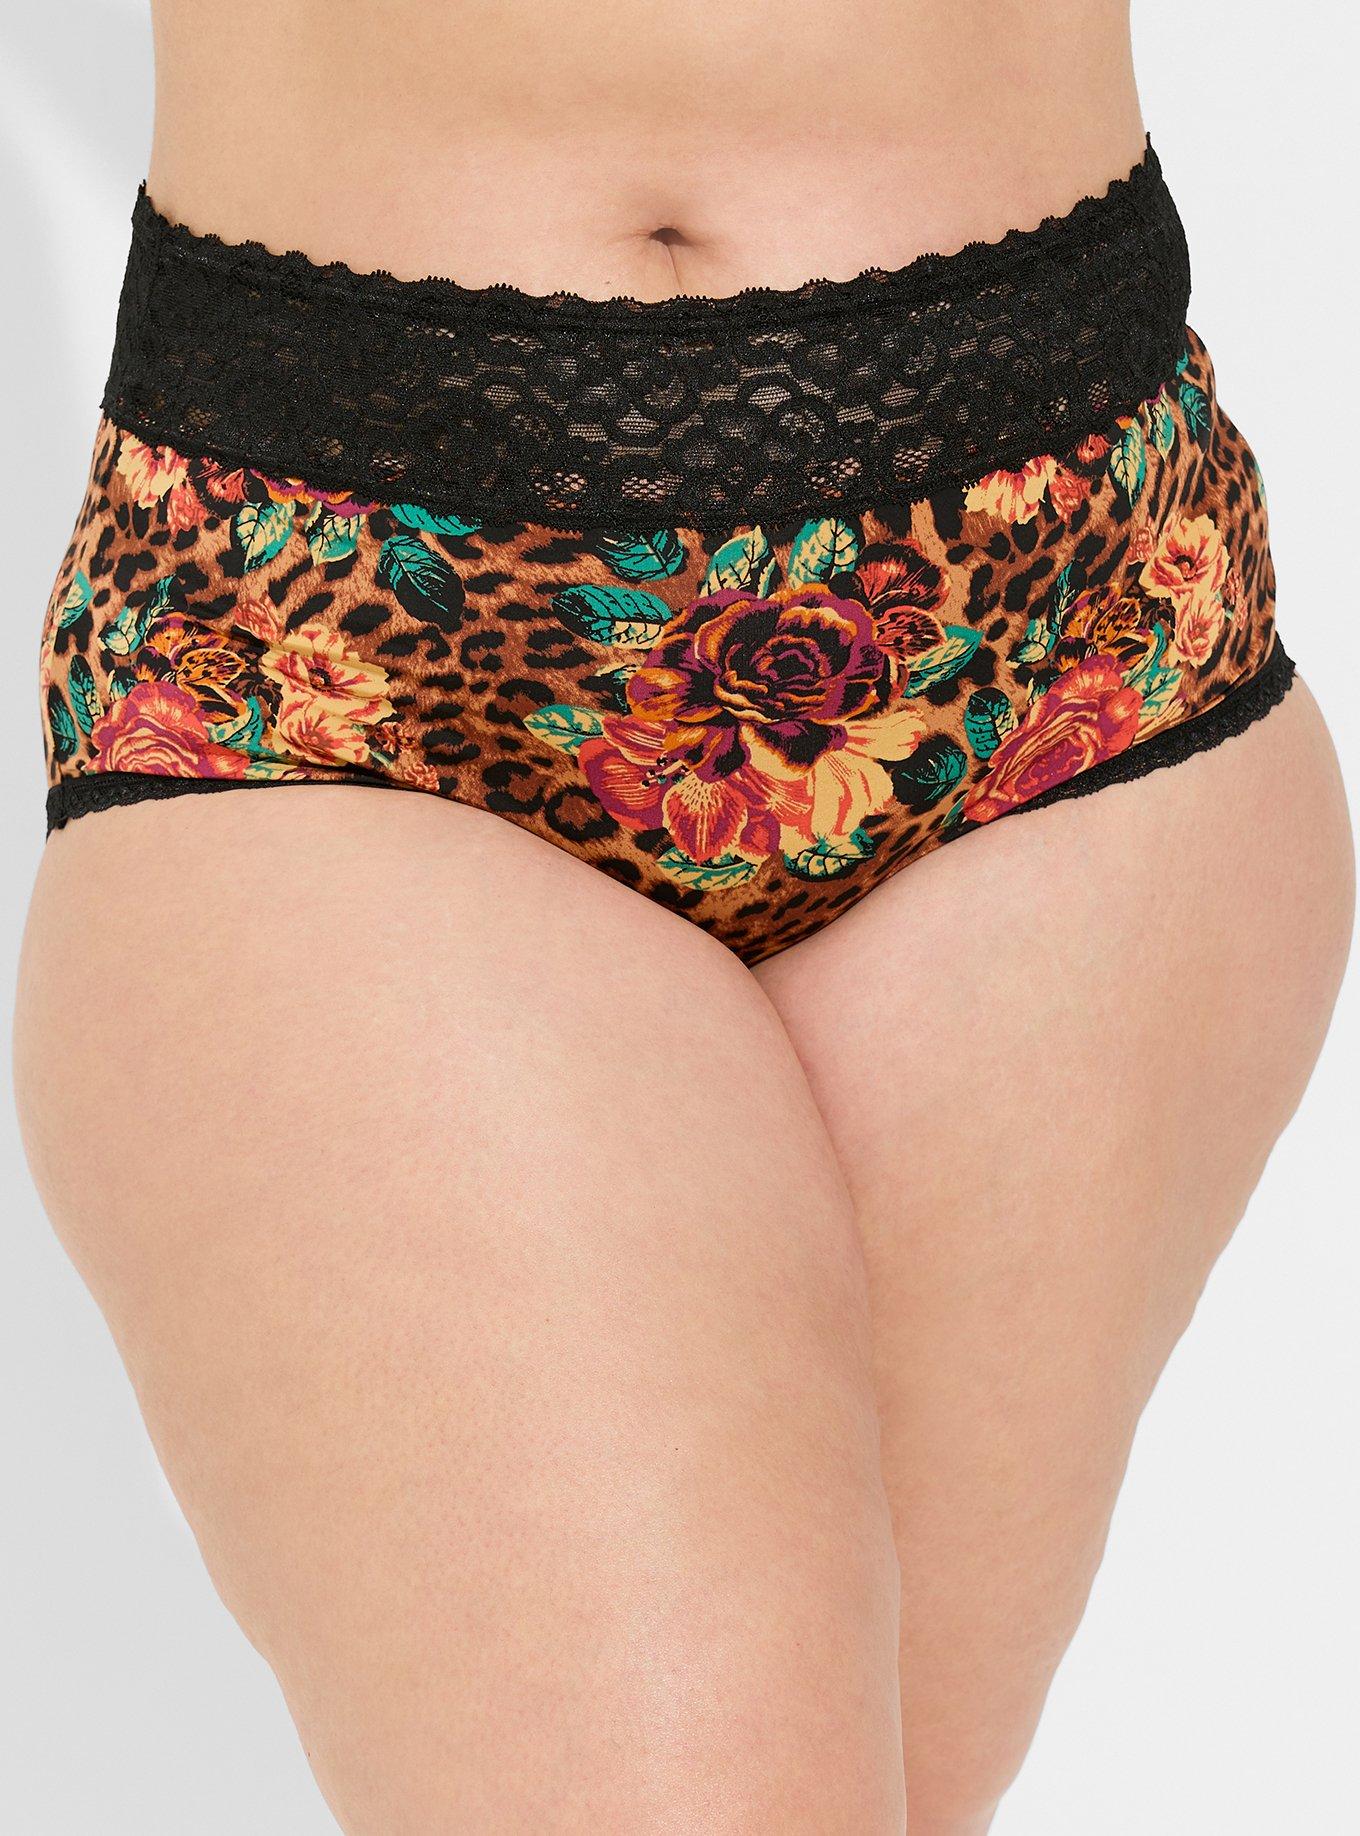 Ladies Printed Design Underwear Cotton Rich Knickers Briefs Women's Panties